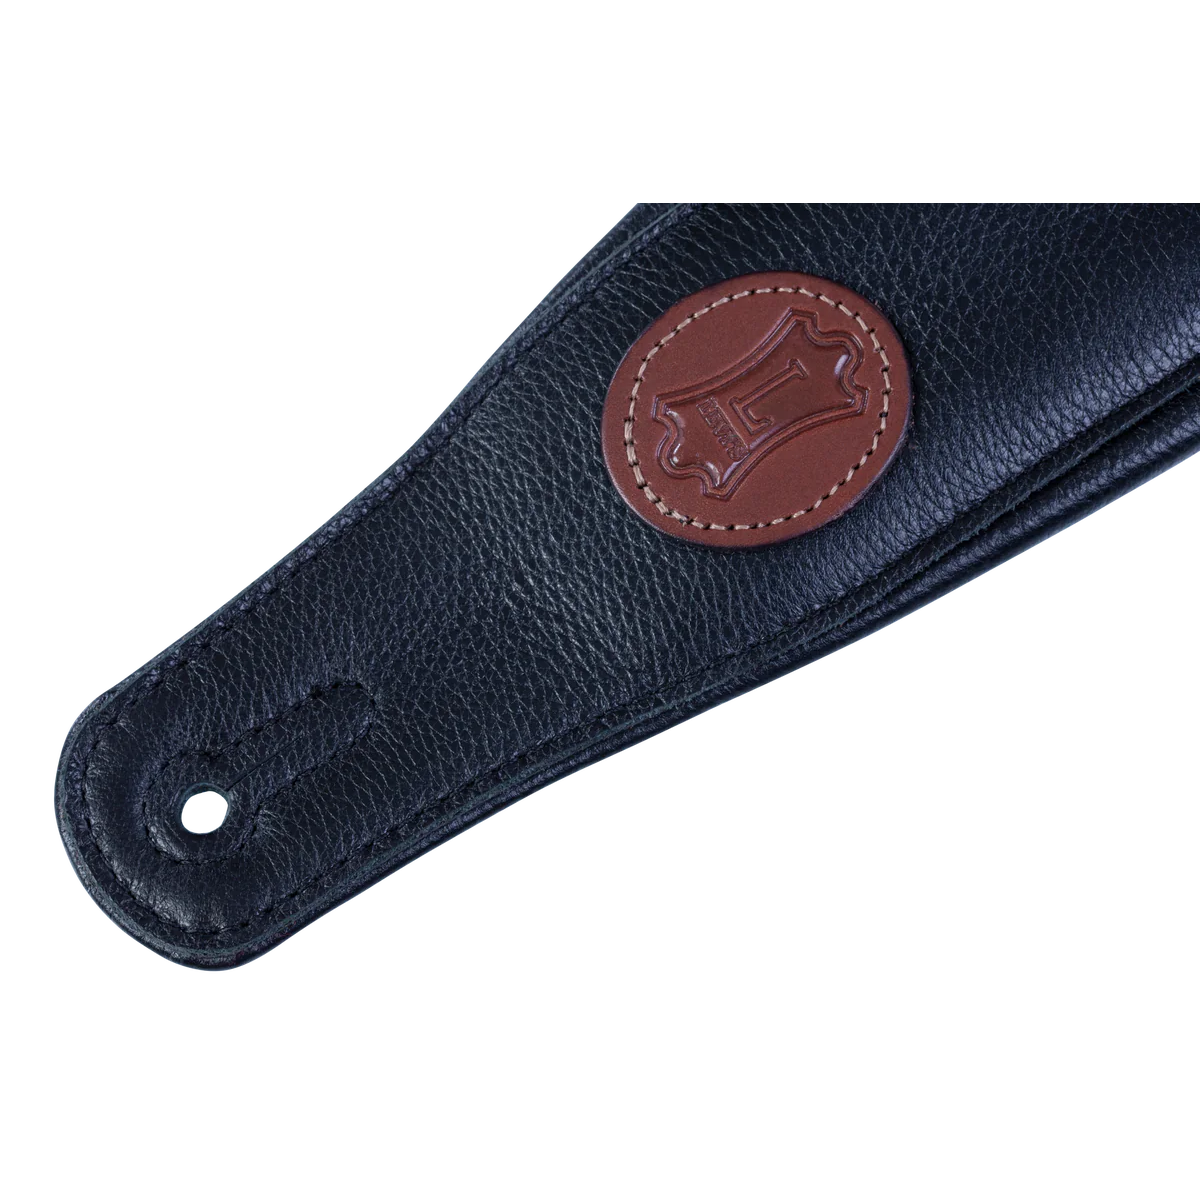 Premium Leather Guitar Strap, Black